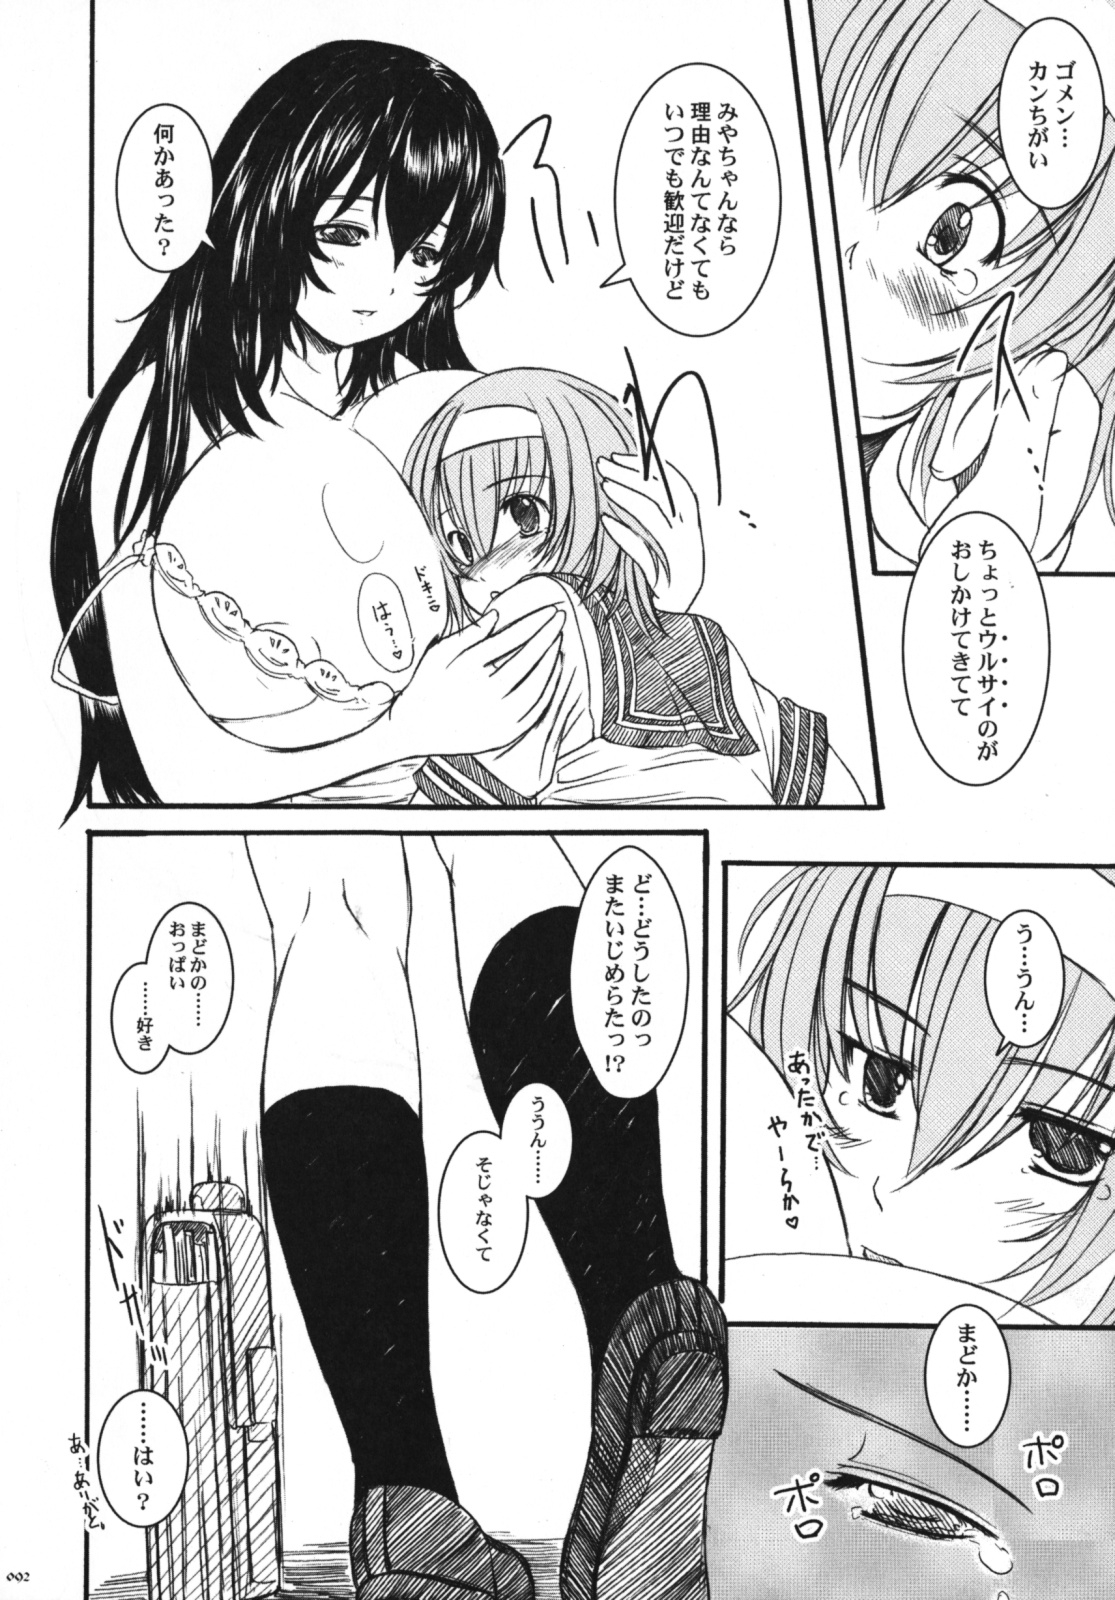 [Kesson Shoujo] Kesson Shoujo Memories 3 -Futanari Ero Manga- 92